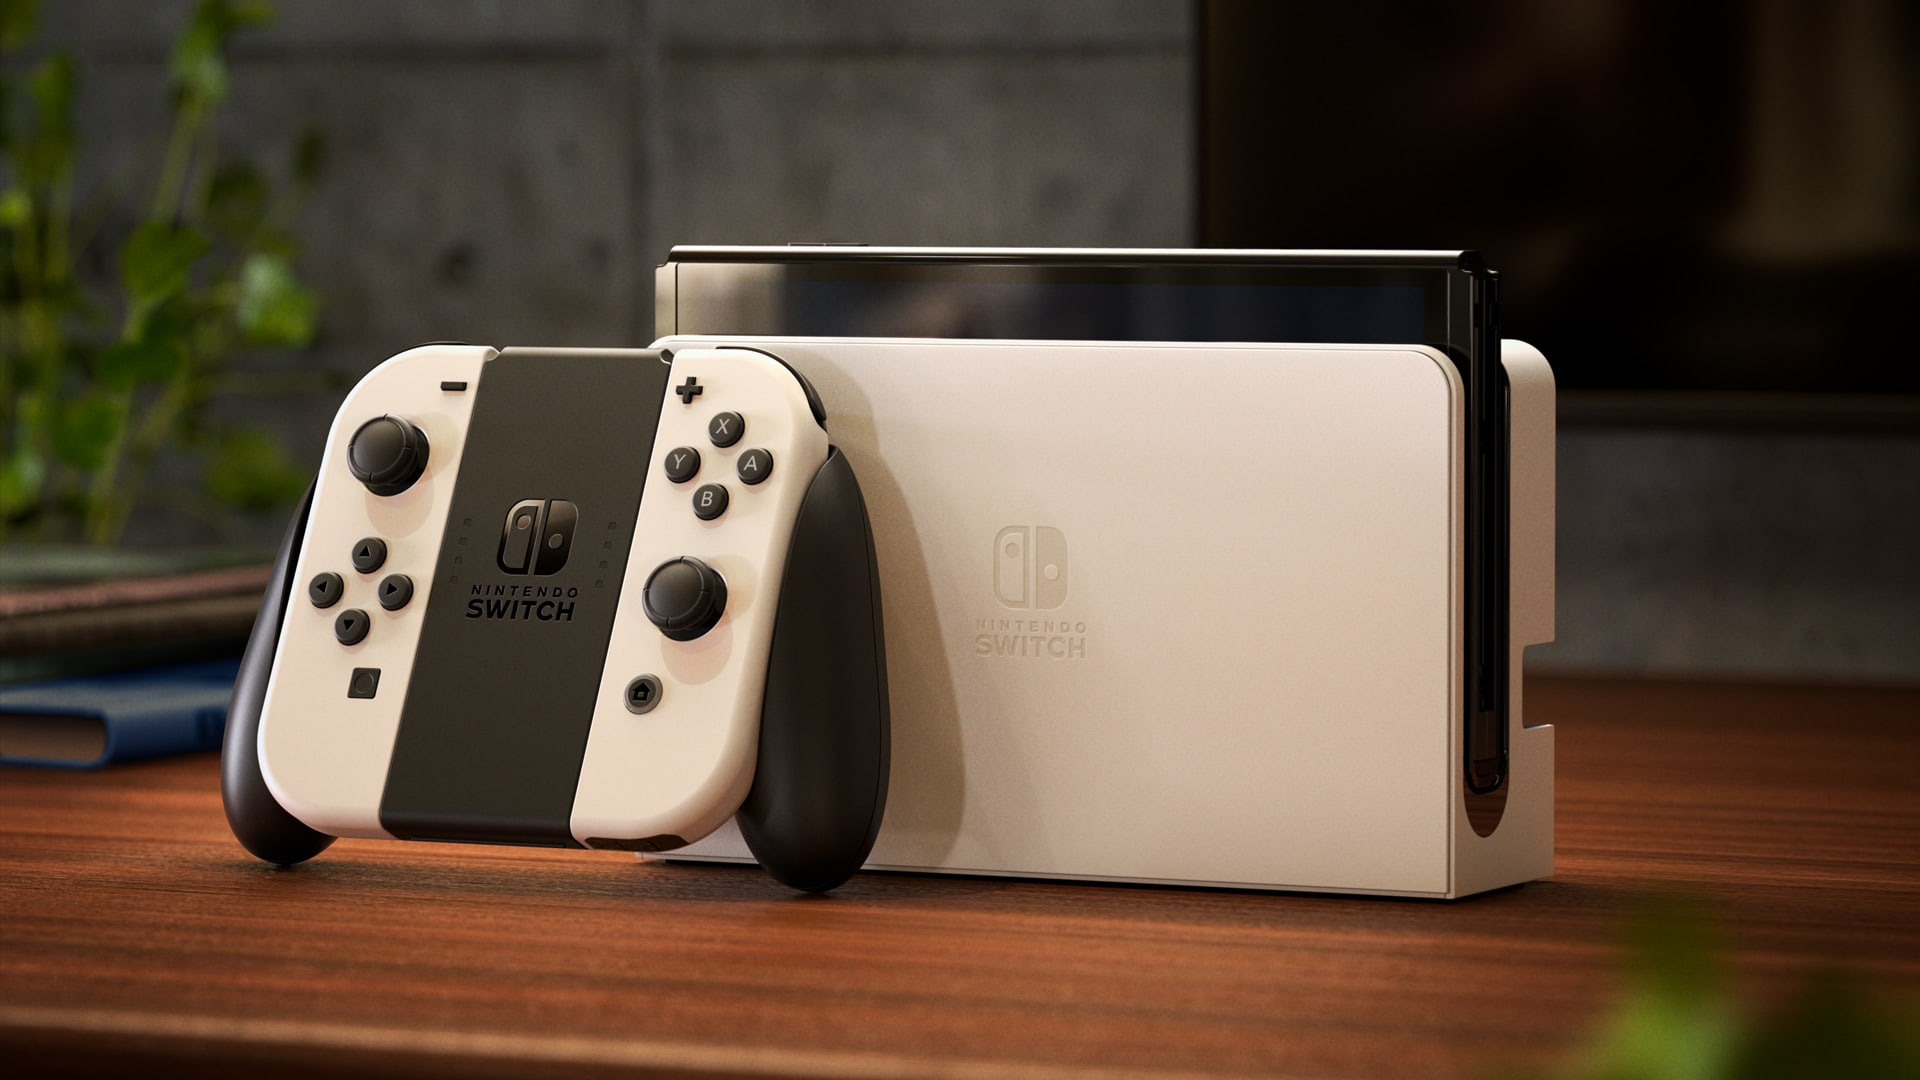 Bundle do Nintendo Switch OLED aparece com grande desconto por tempo limitado na Amazon 2024 Portal Viciados